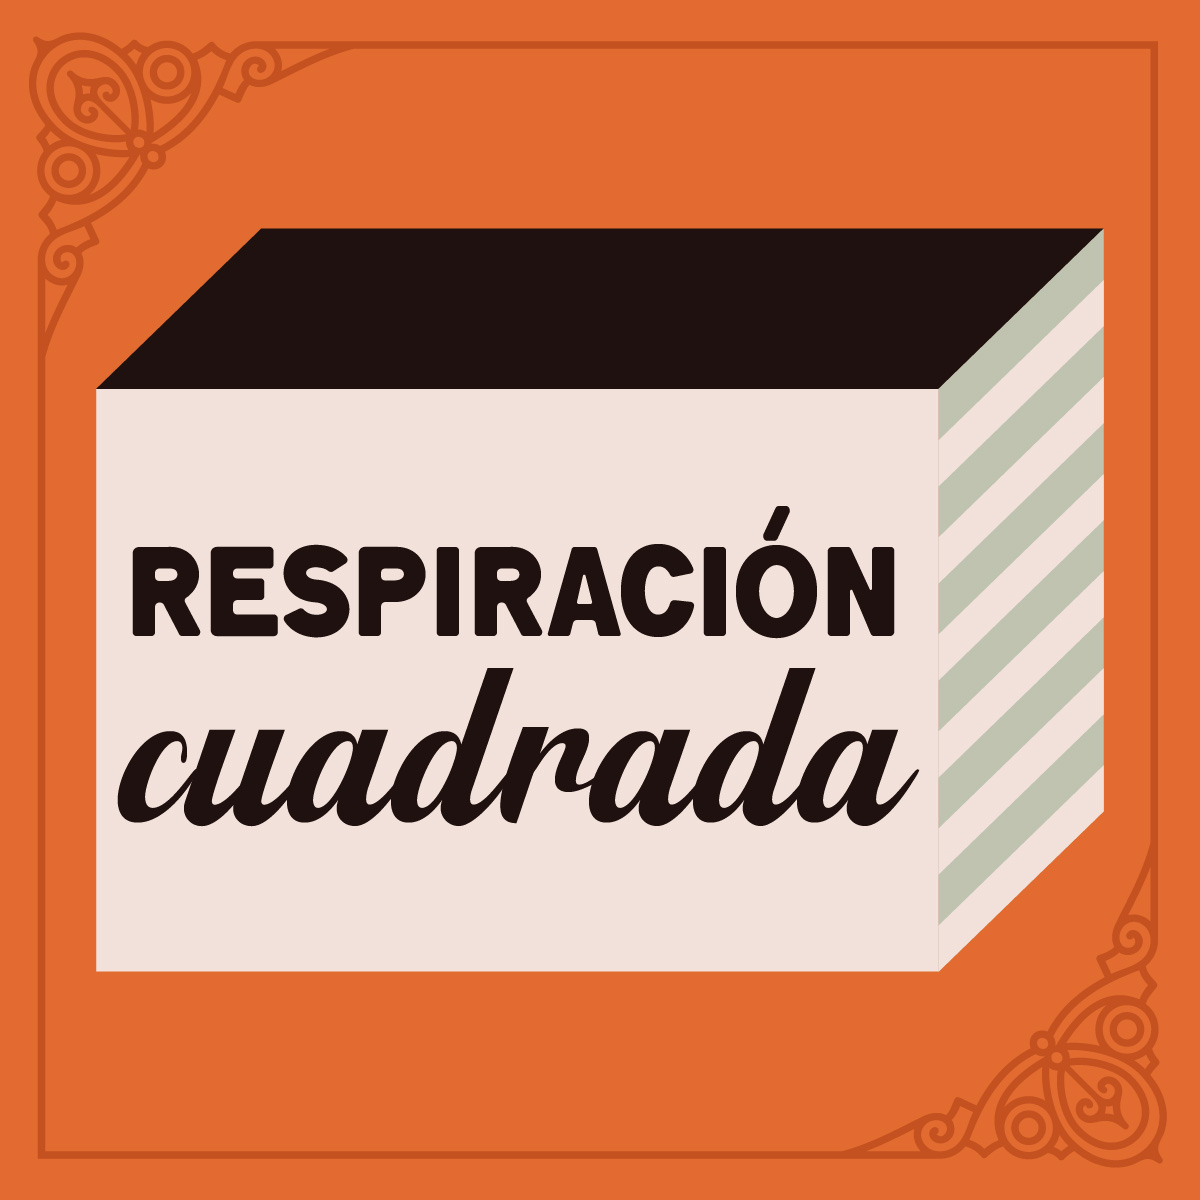 RESPIRACIÓN CUADRADA